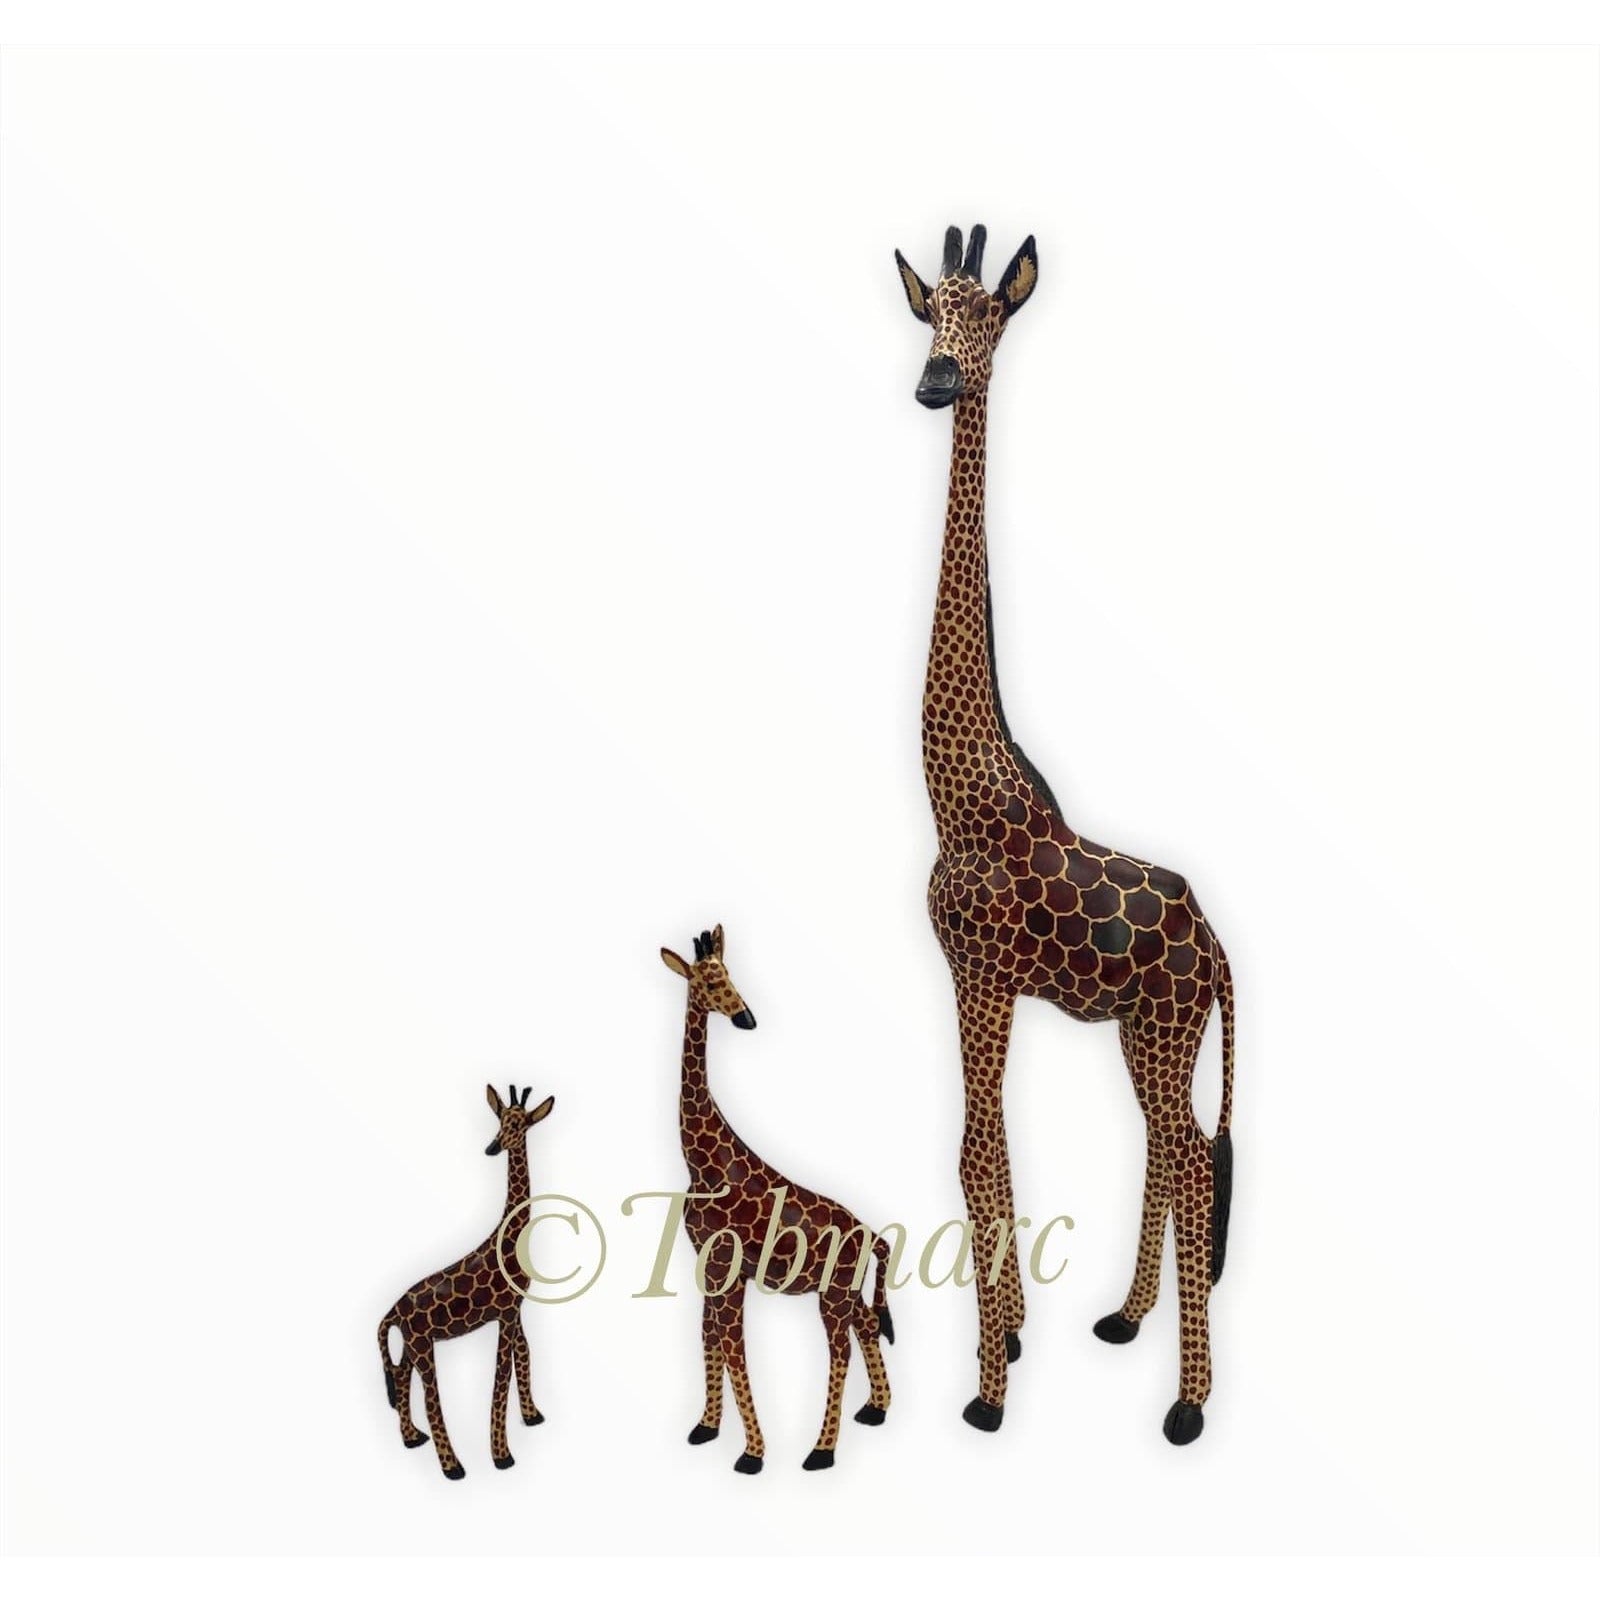 Tobmarc Home Decor & Gifts  Hand carved Giraffe Sculpture, African Giraffe Decor